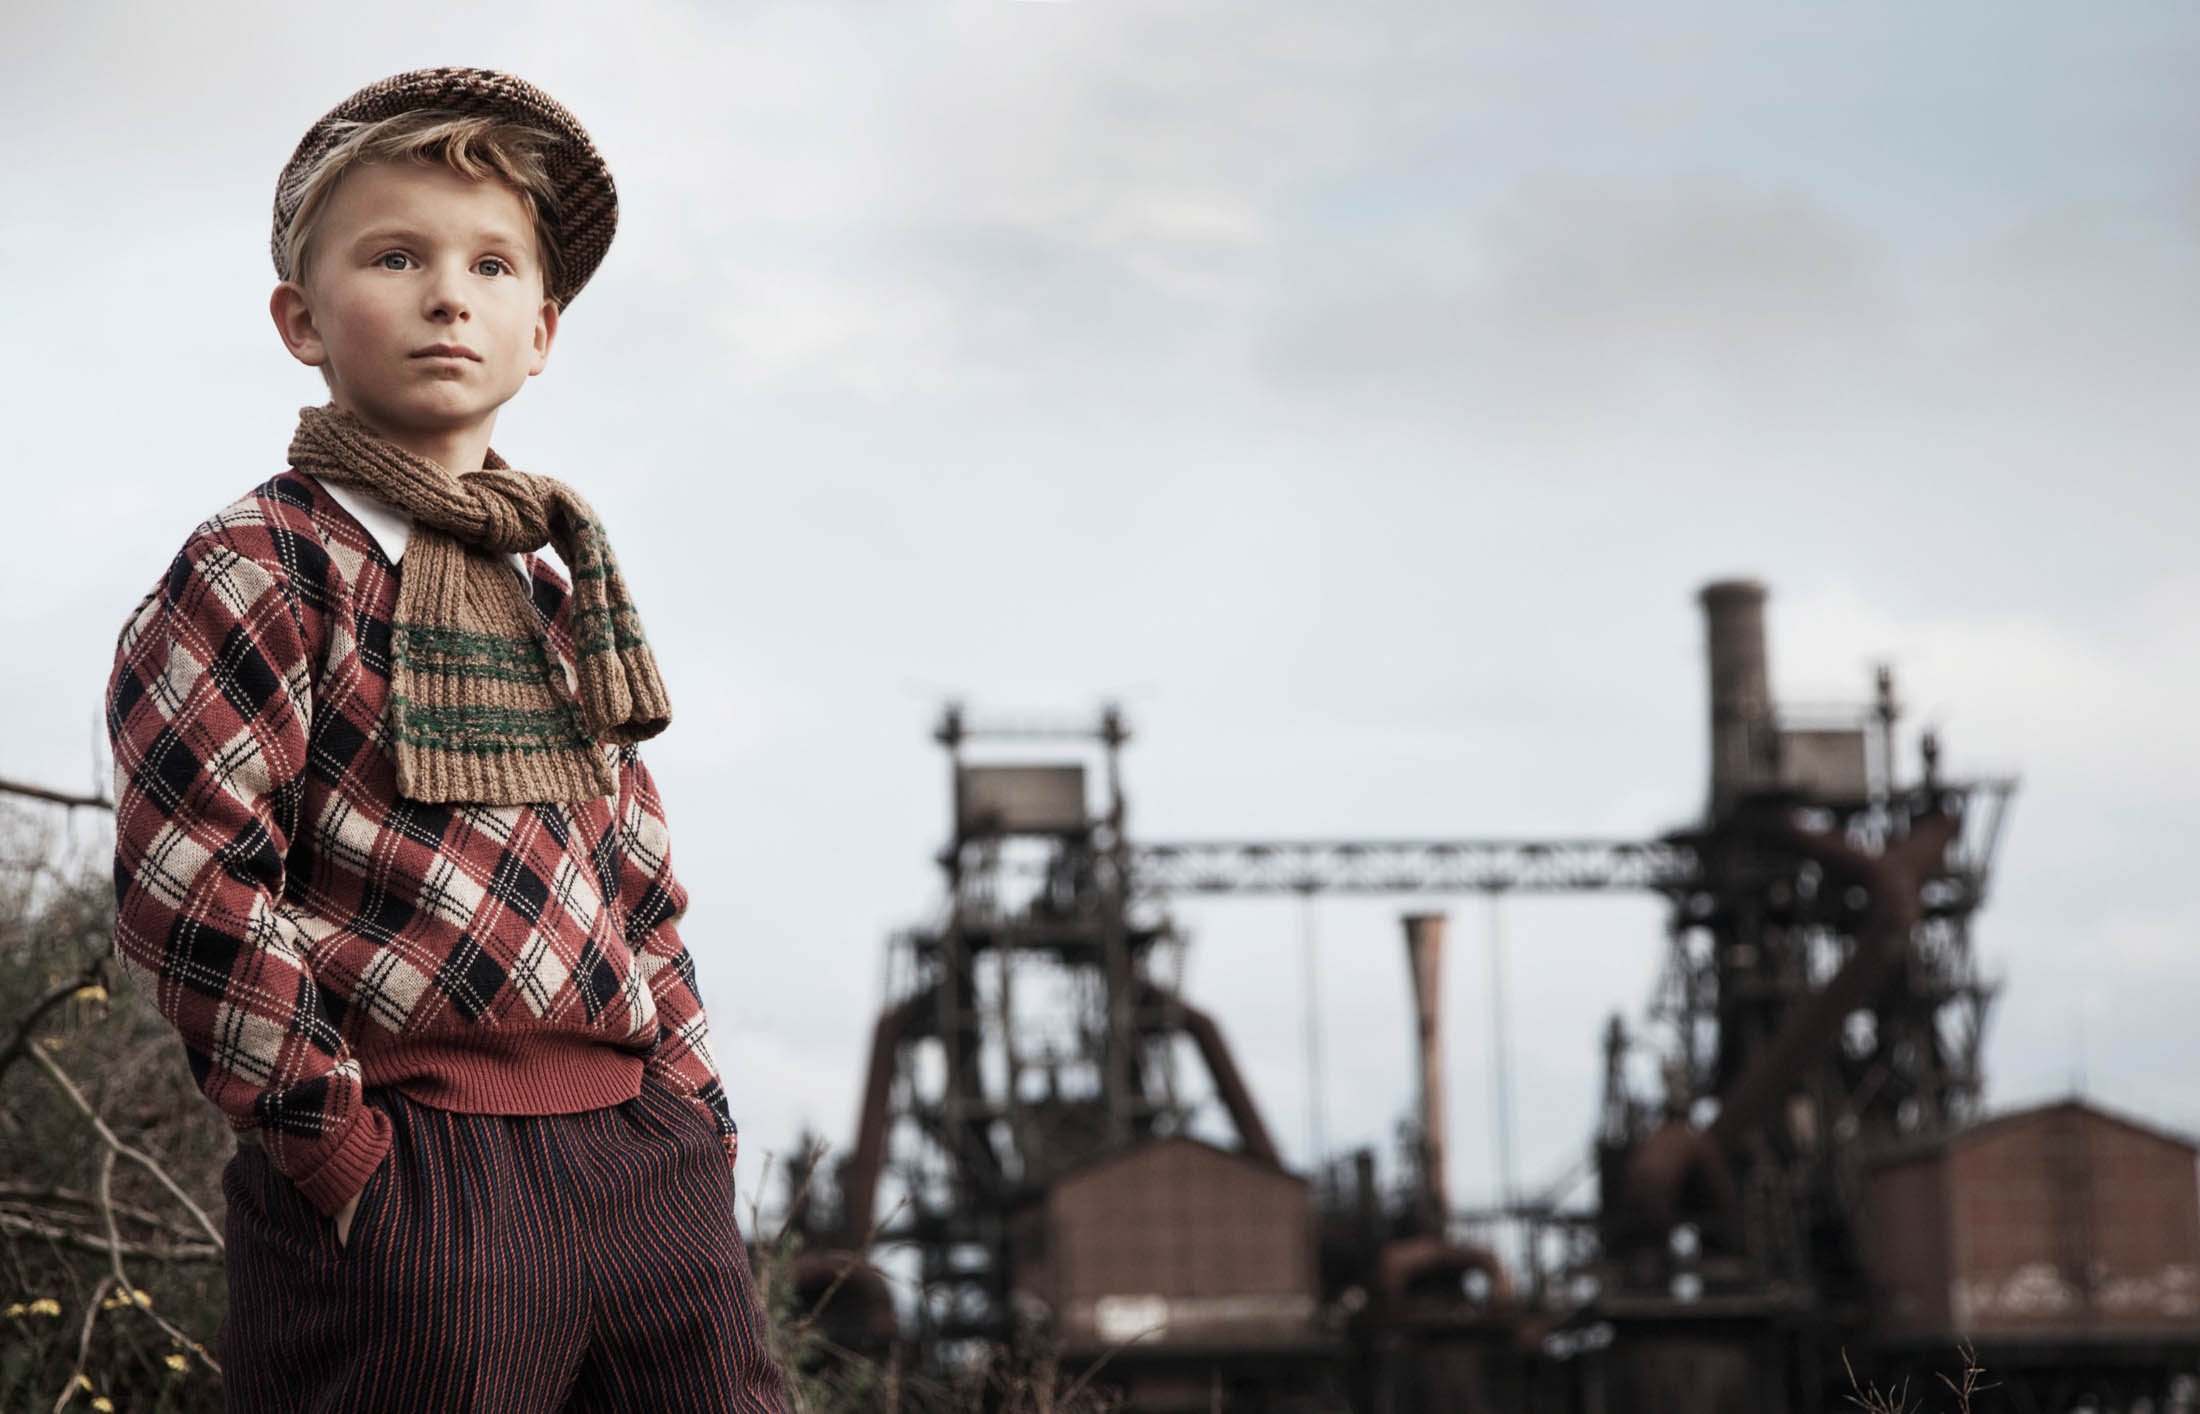 Ein kleiner Junge in Vintage-Kleidung, darunter eine karierte Jacke und eine Schiebermütze, steht selbstbewusst im Freien vor der industriellen Kulisse alter Fabriken unter einem bewölkten Himmel. © Fotografie Tomas Rodriguez